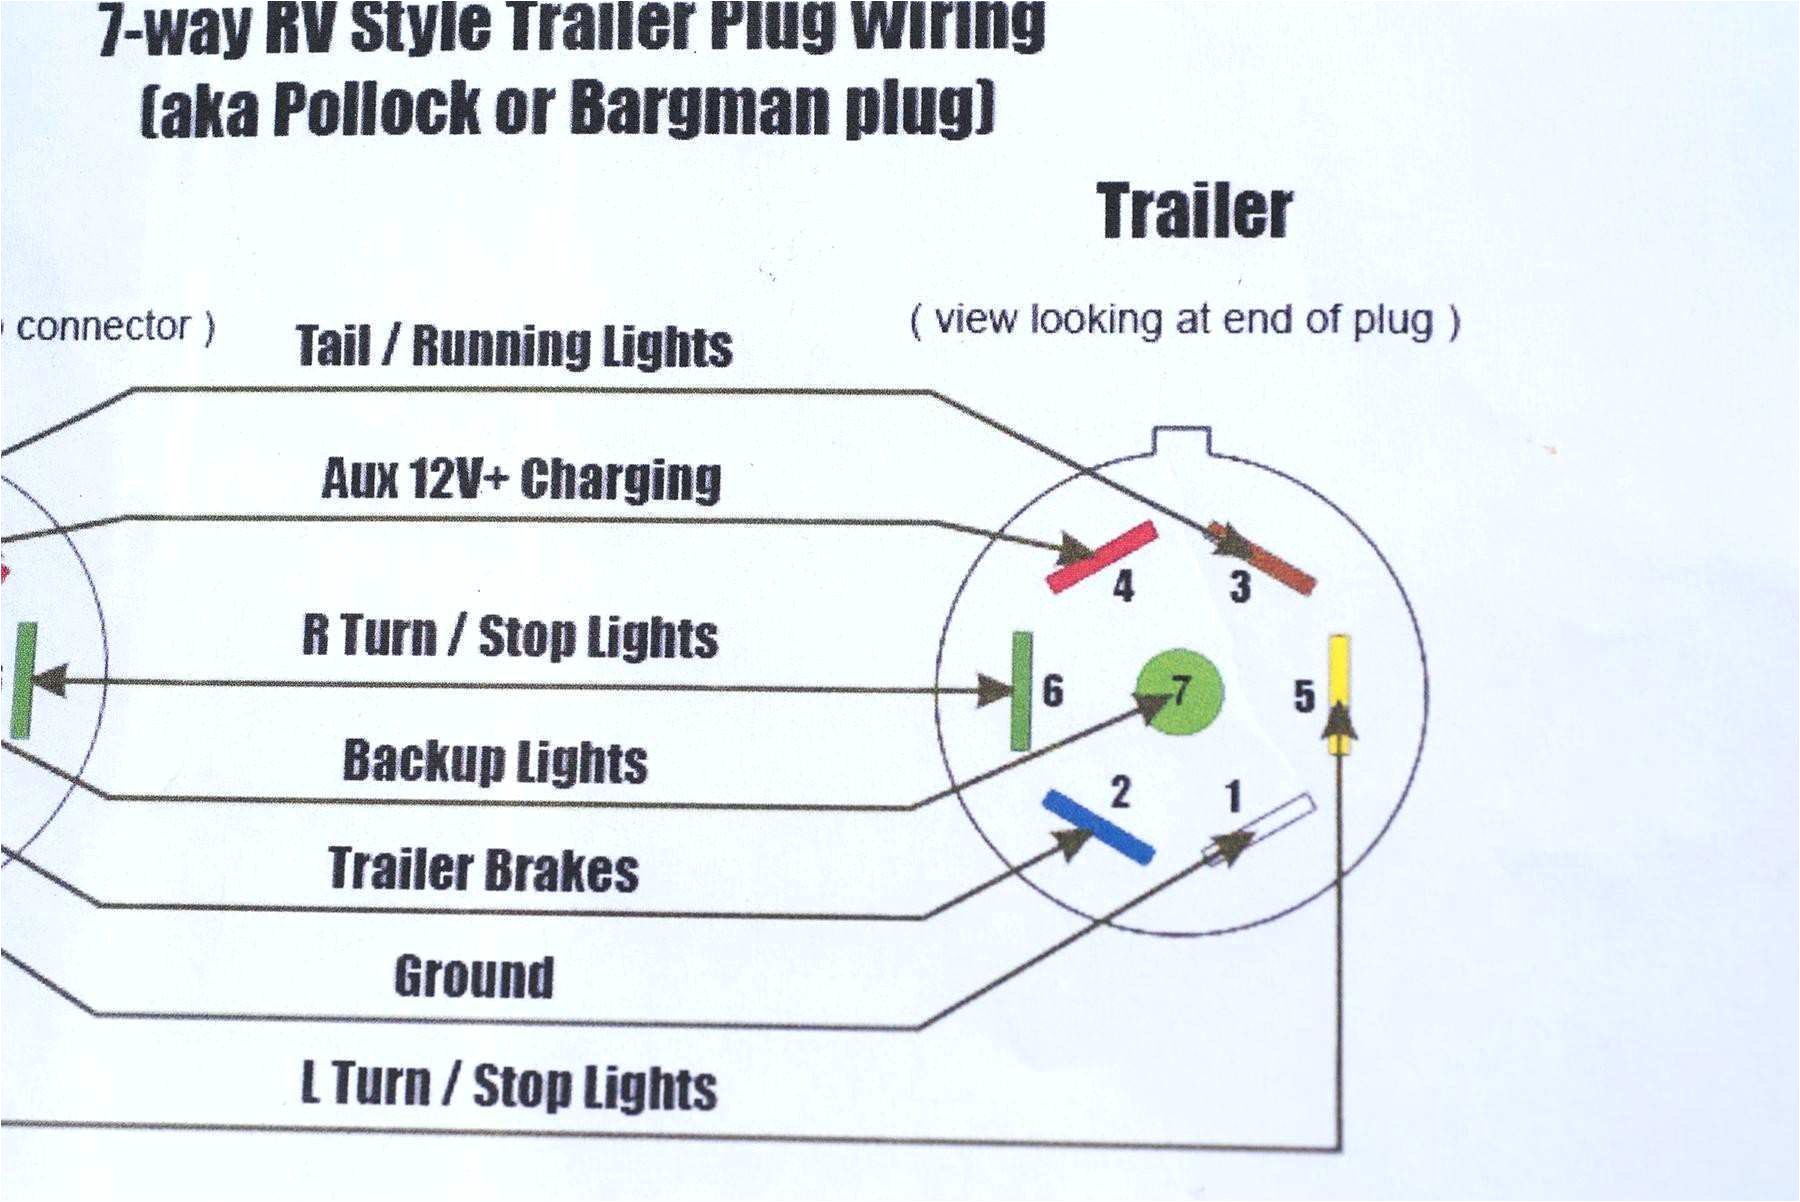 lance camper plug wiring diagram wiring diagram view lance camper wiring diagram